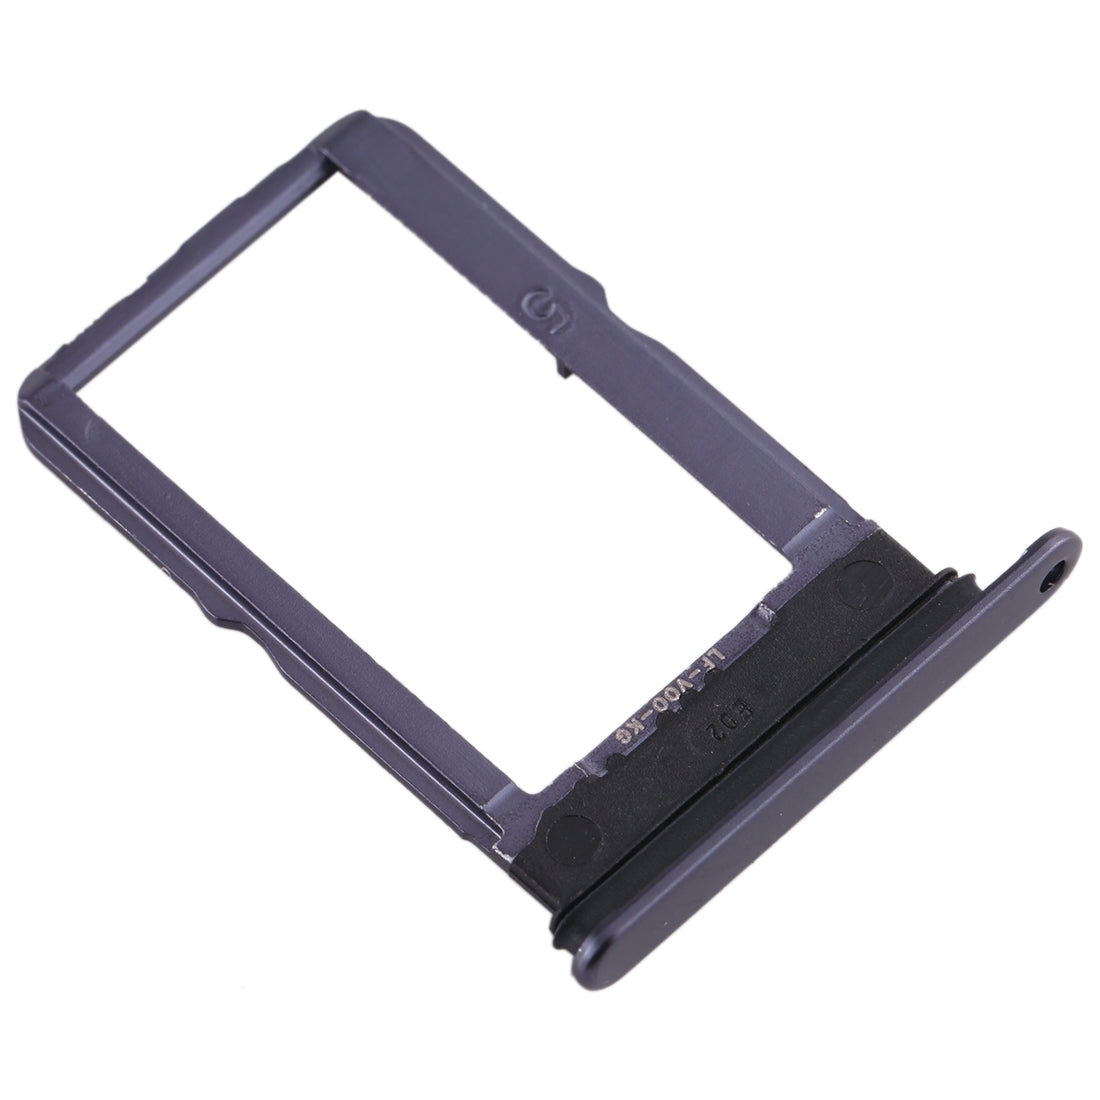 Dual SIM Holder Tray Vivo S5 Black